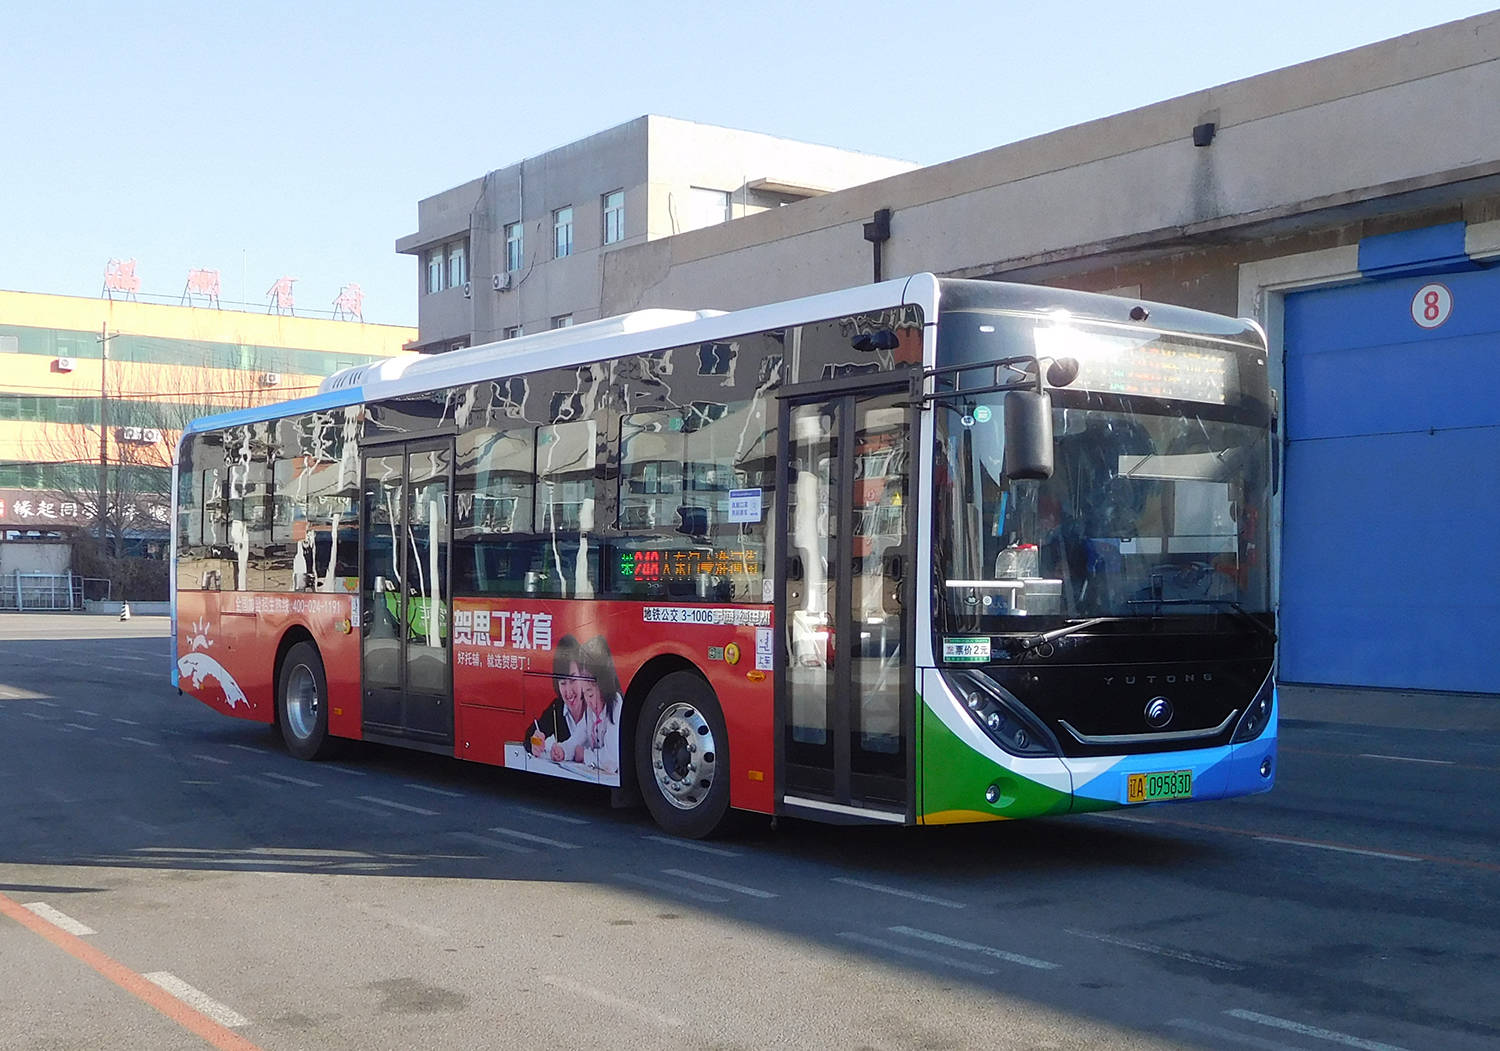 沈阳公交广告248路焕然一新,老7路电车旧貌换新颜